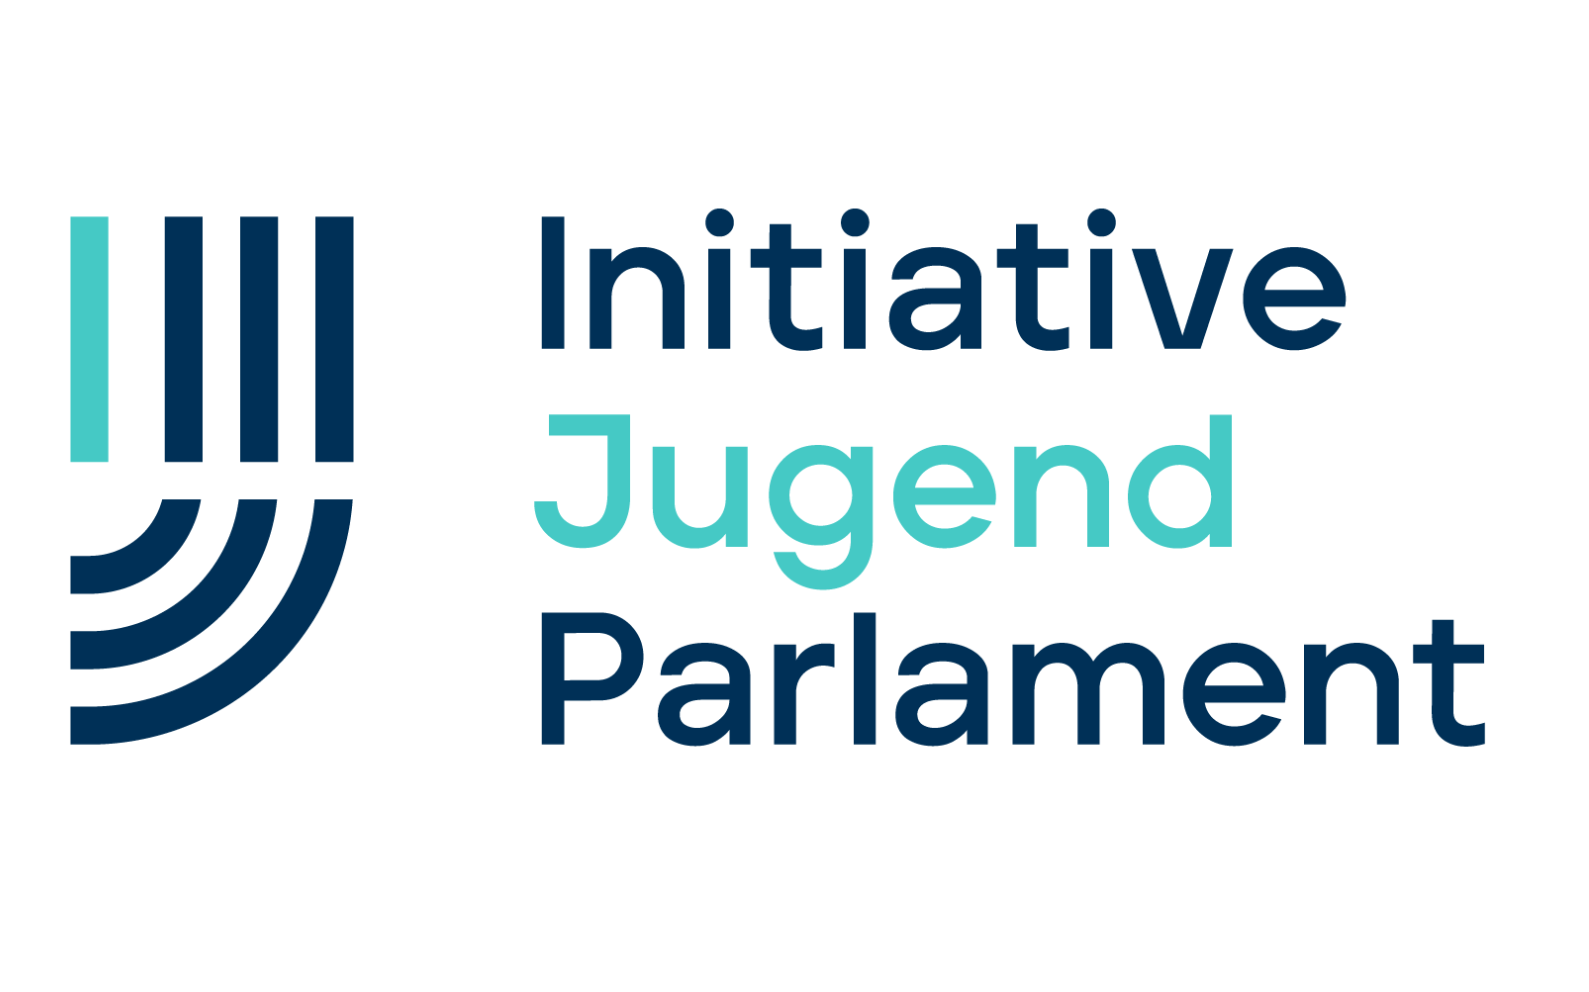 Initiative Jugend Parlament